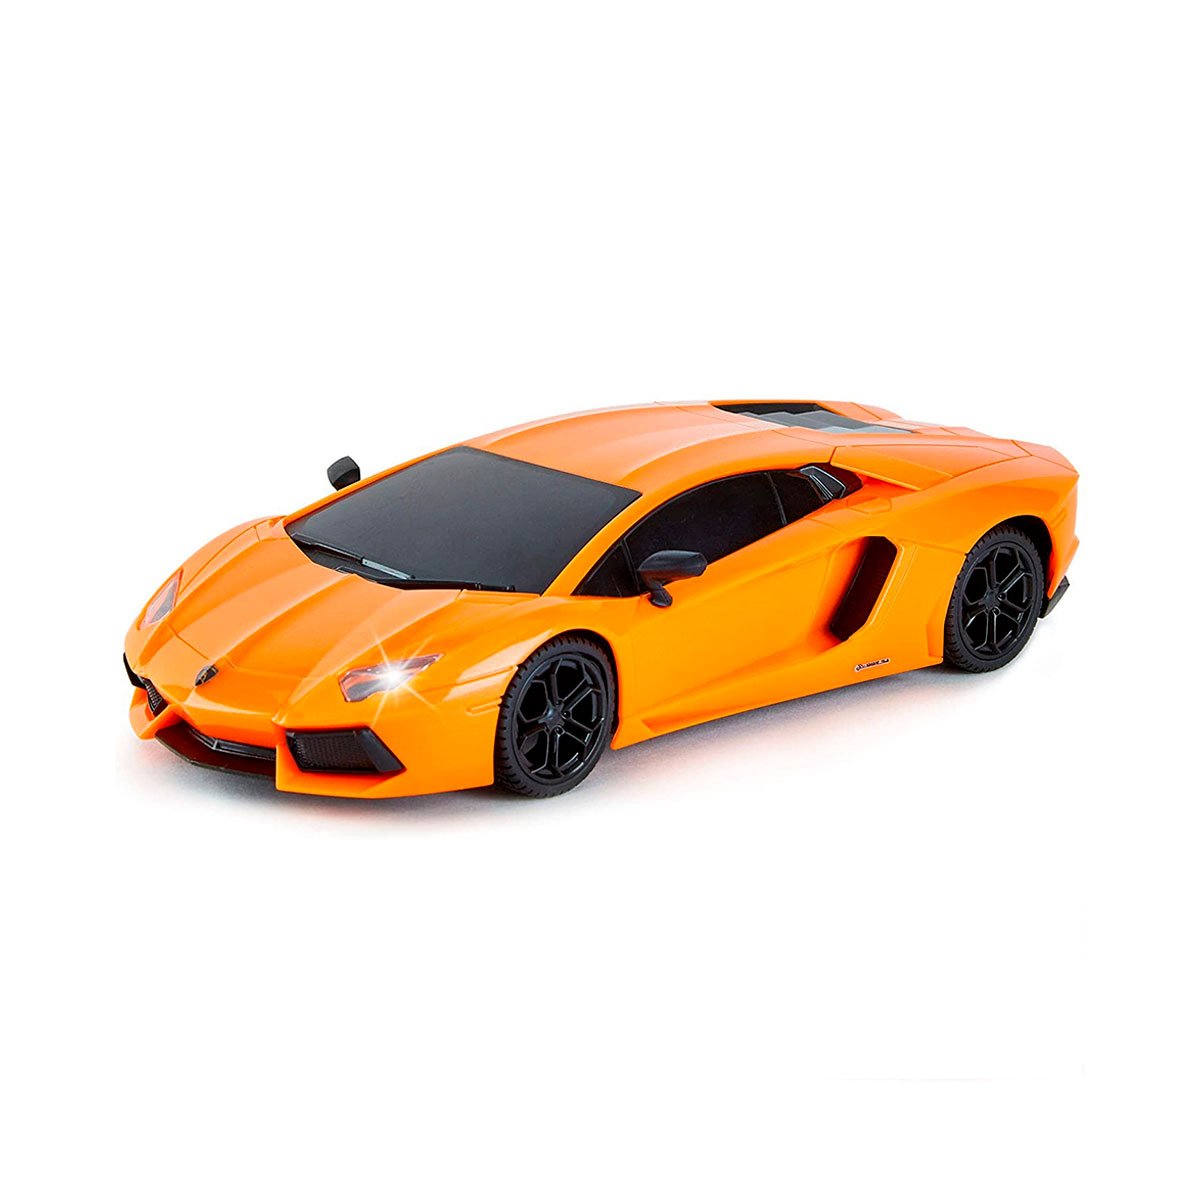 Автомобиль KS Drive на р/у Lamborghini Aventador LP 700-4, 1:24, 2.4Ghz оранжевый (124GLBO) - фото 1